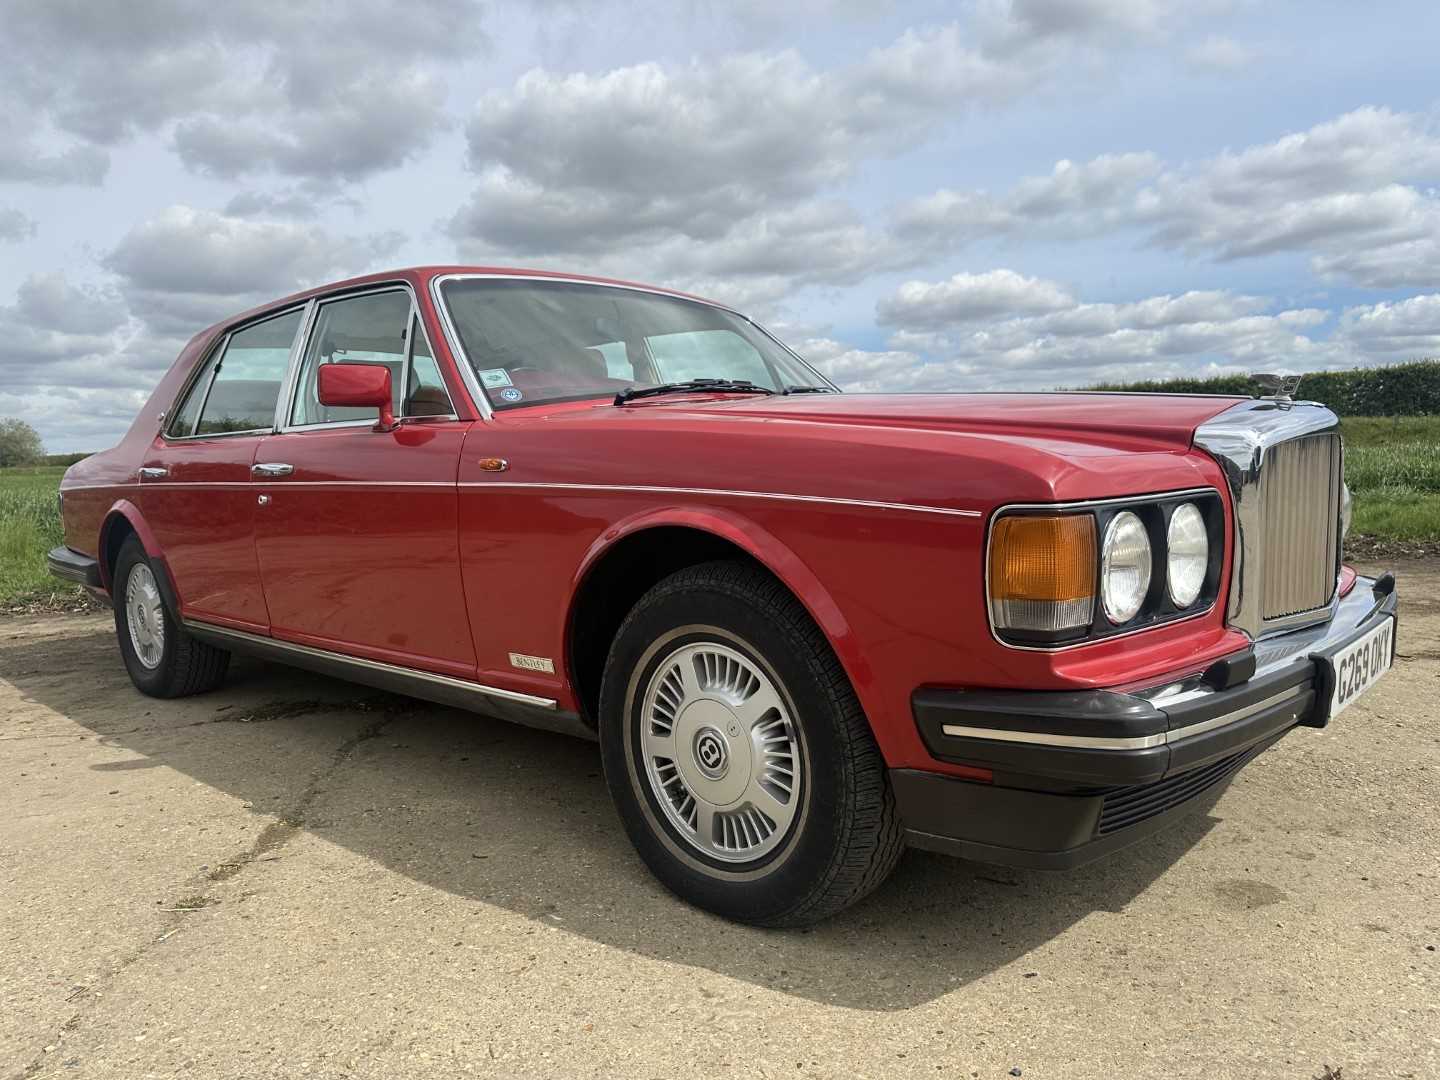 1990 Bentley Mulsanne S saloon, 6.75 litre V8, automatic, reg. no. G269 OKY. - Bild 10 aus 40